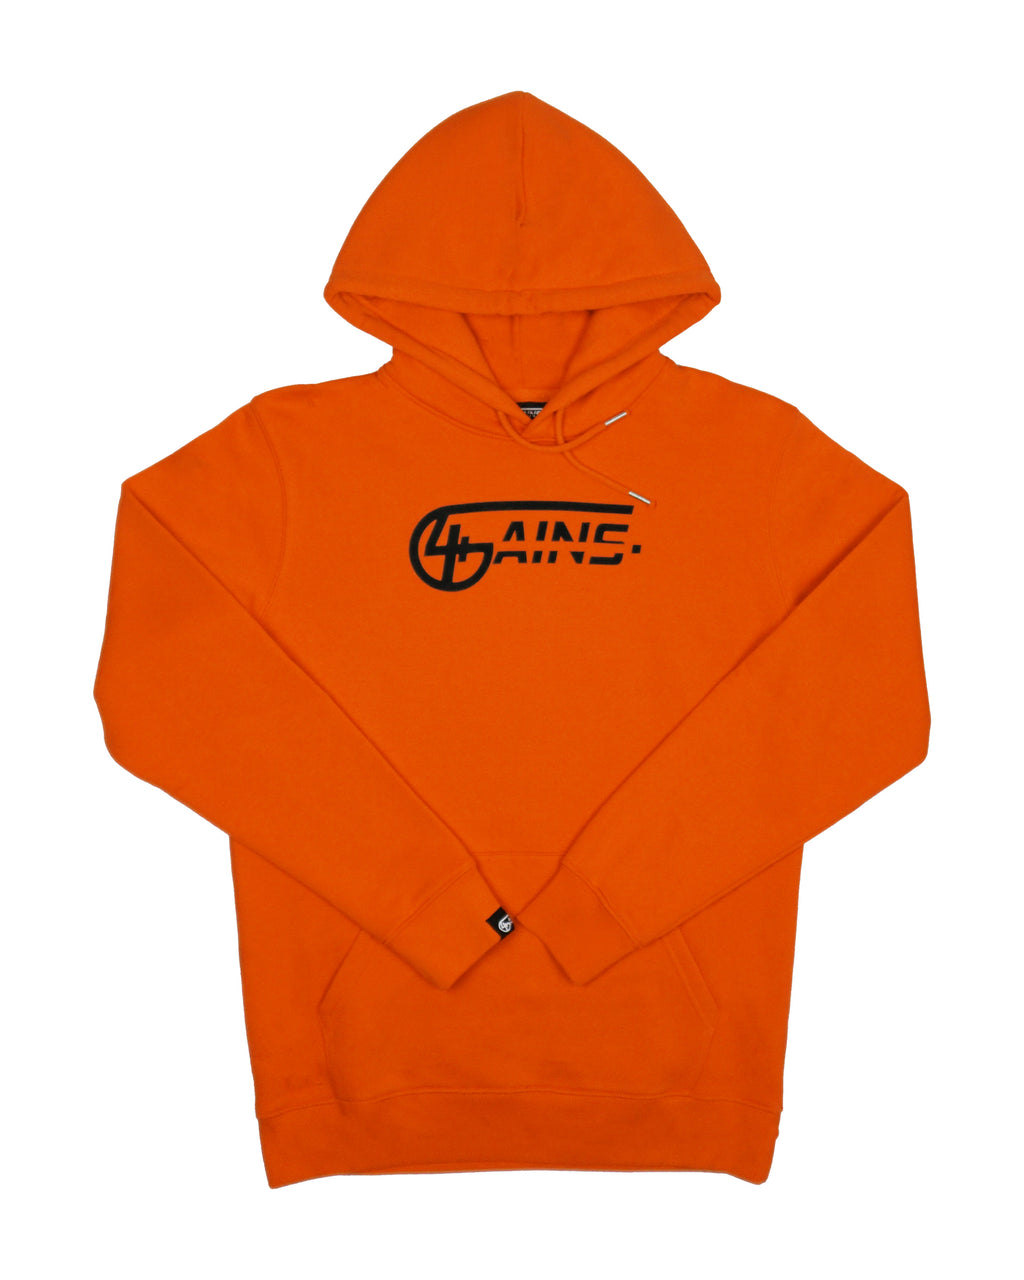 4GAINS unisex Hoodie in orange/black